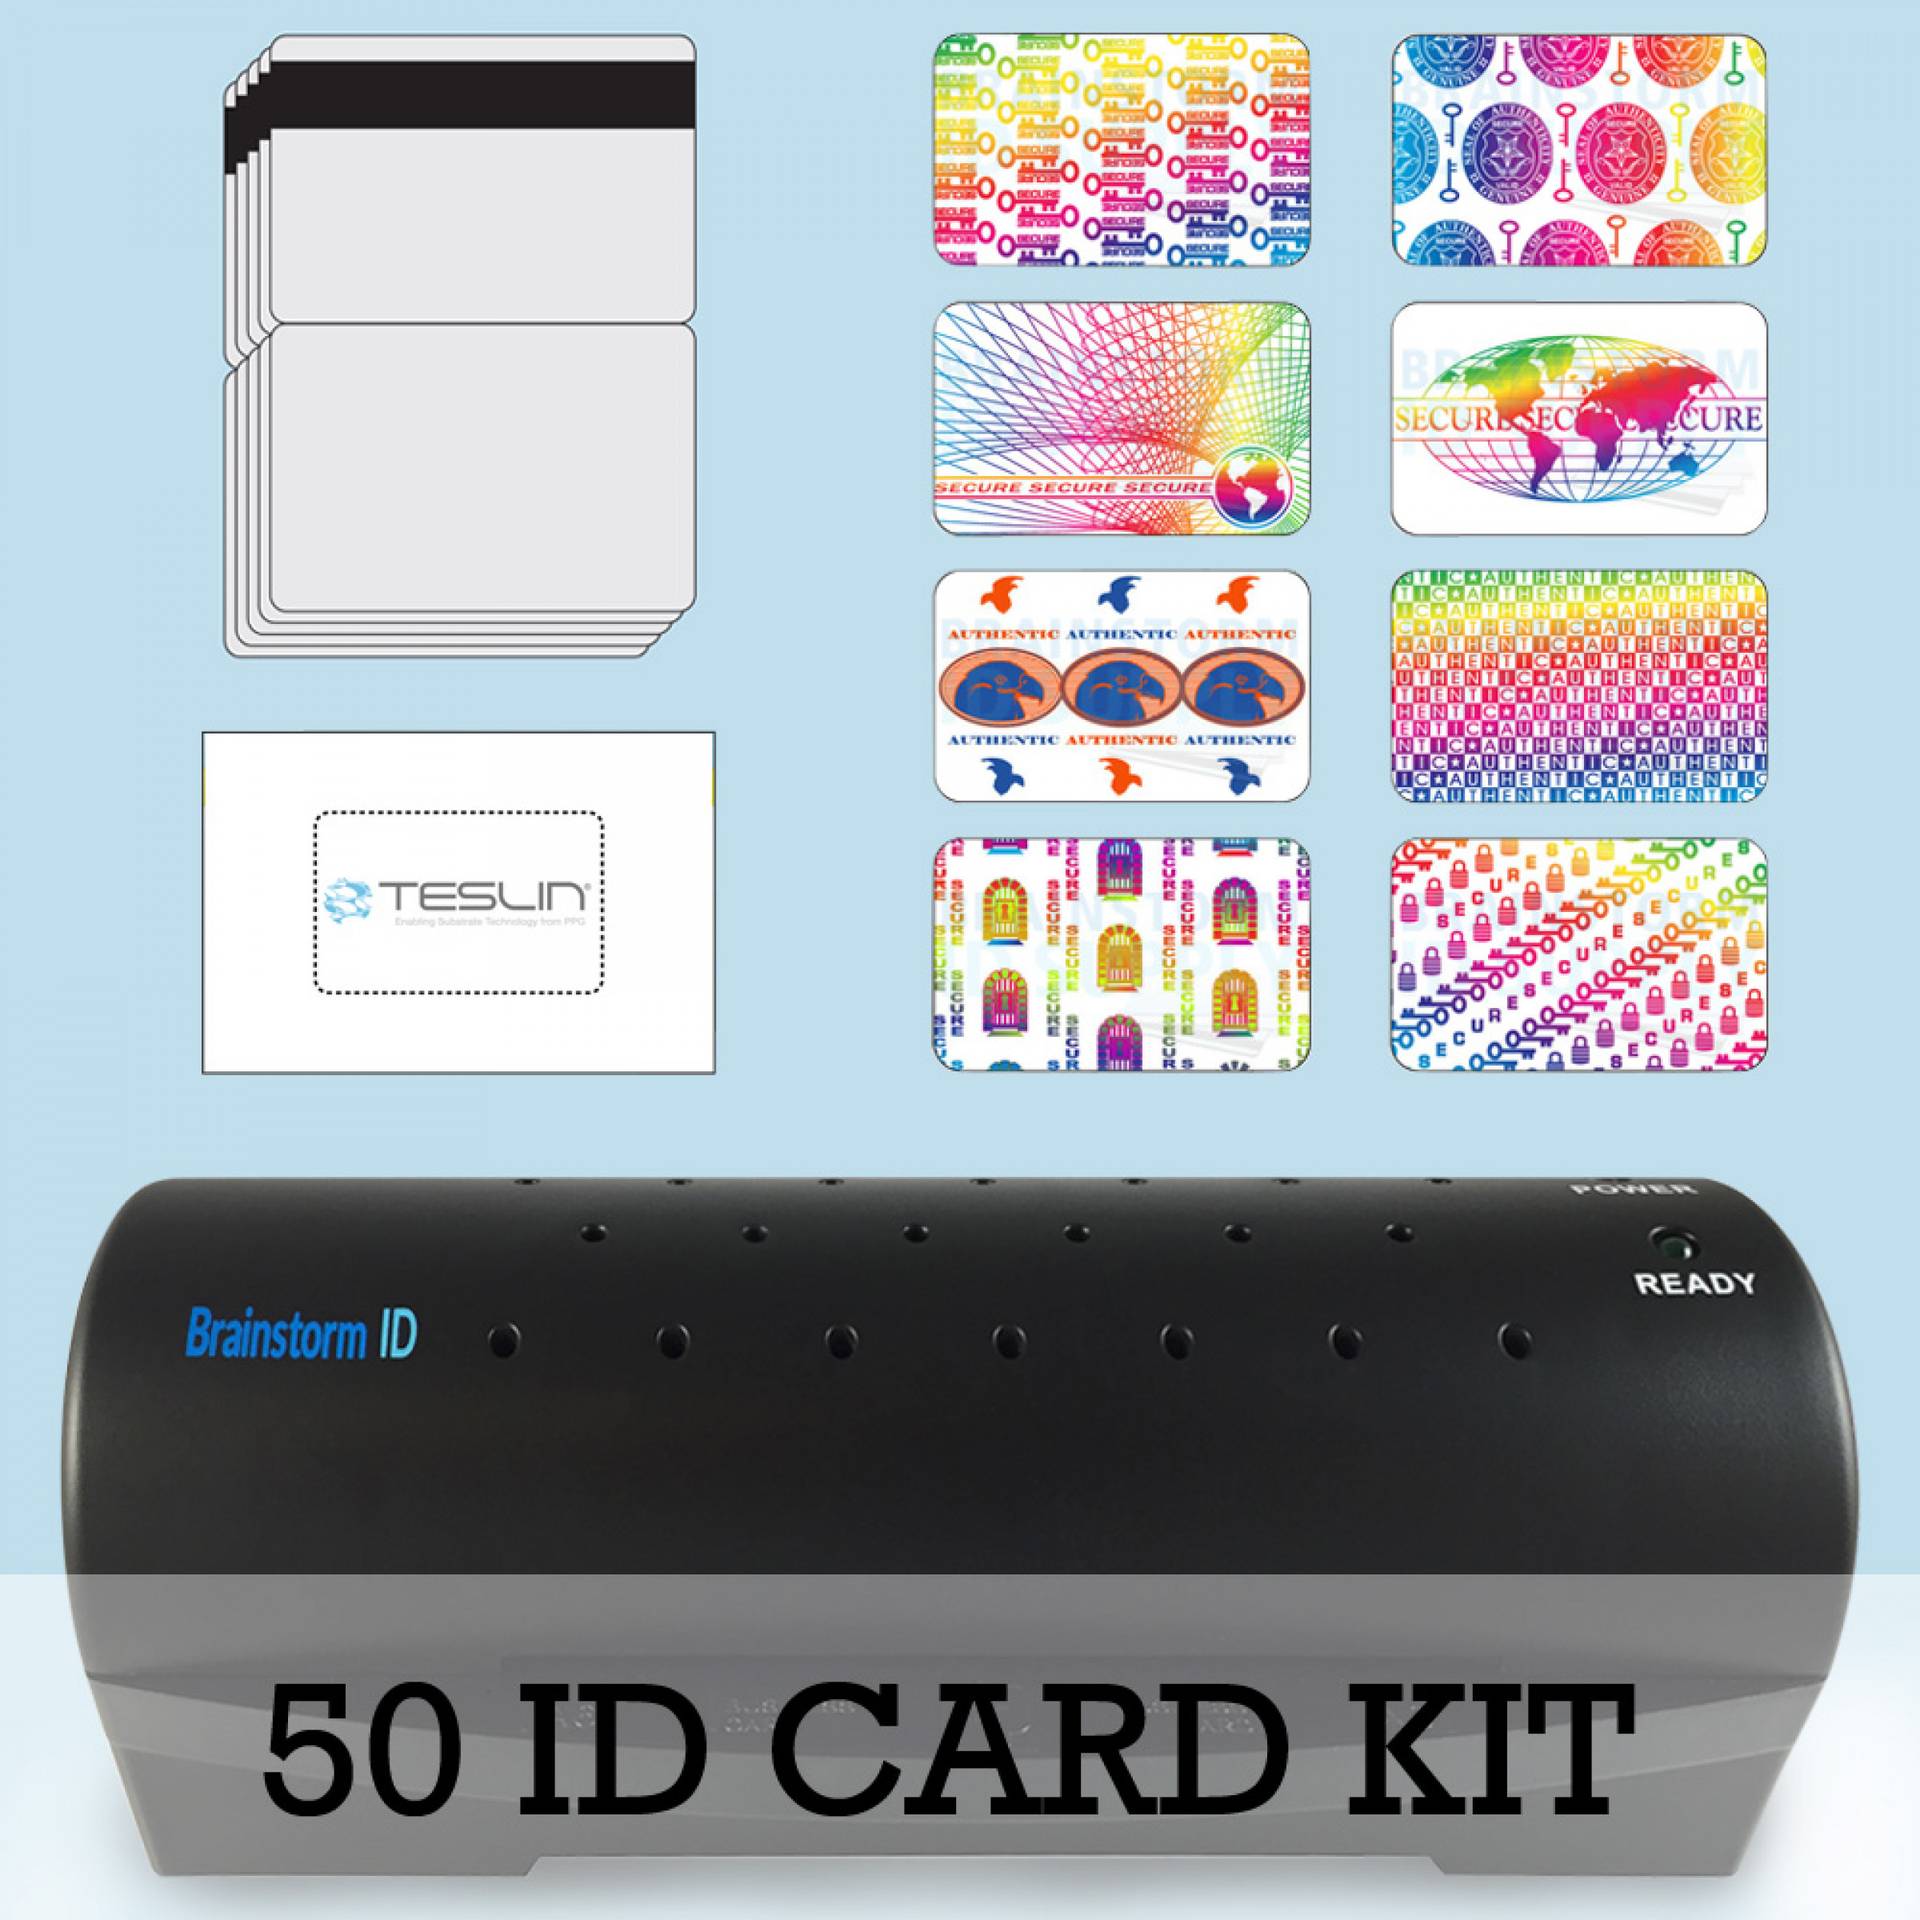 50 ID Card Kit